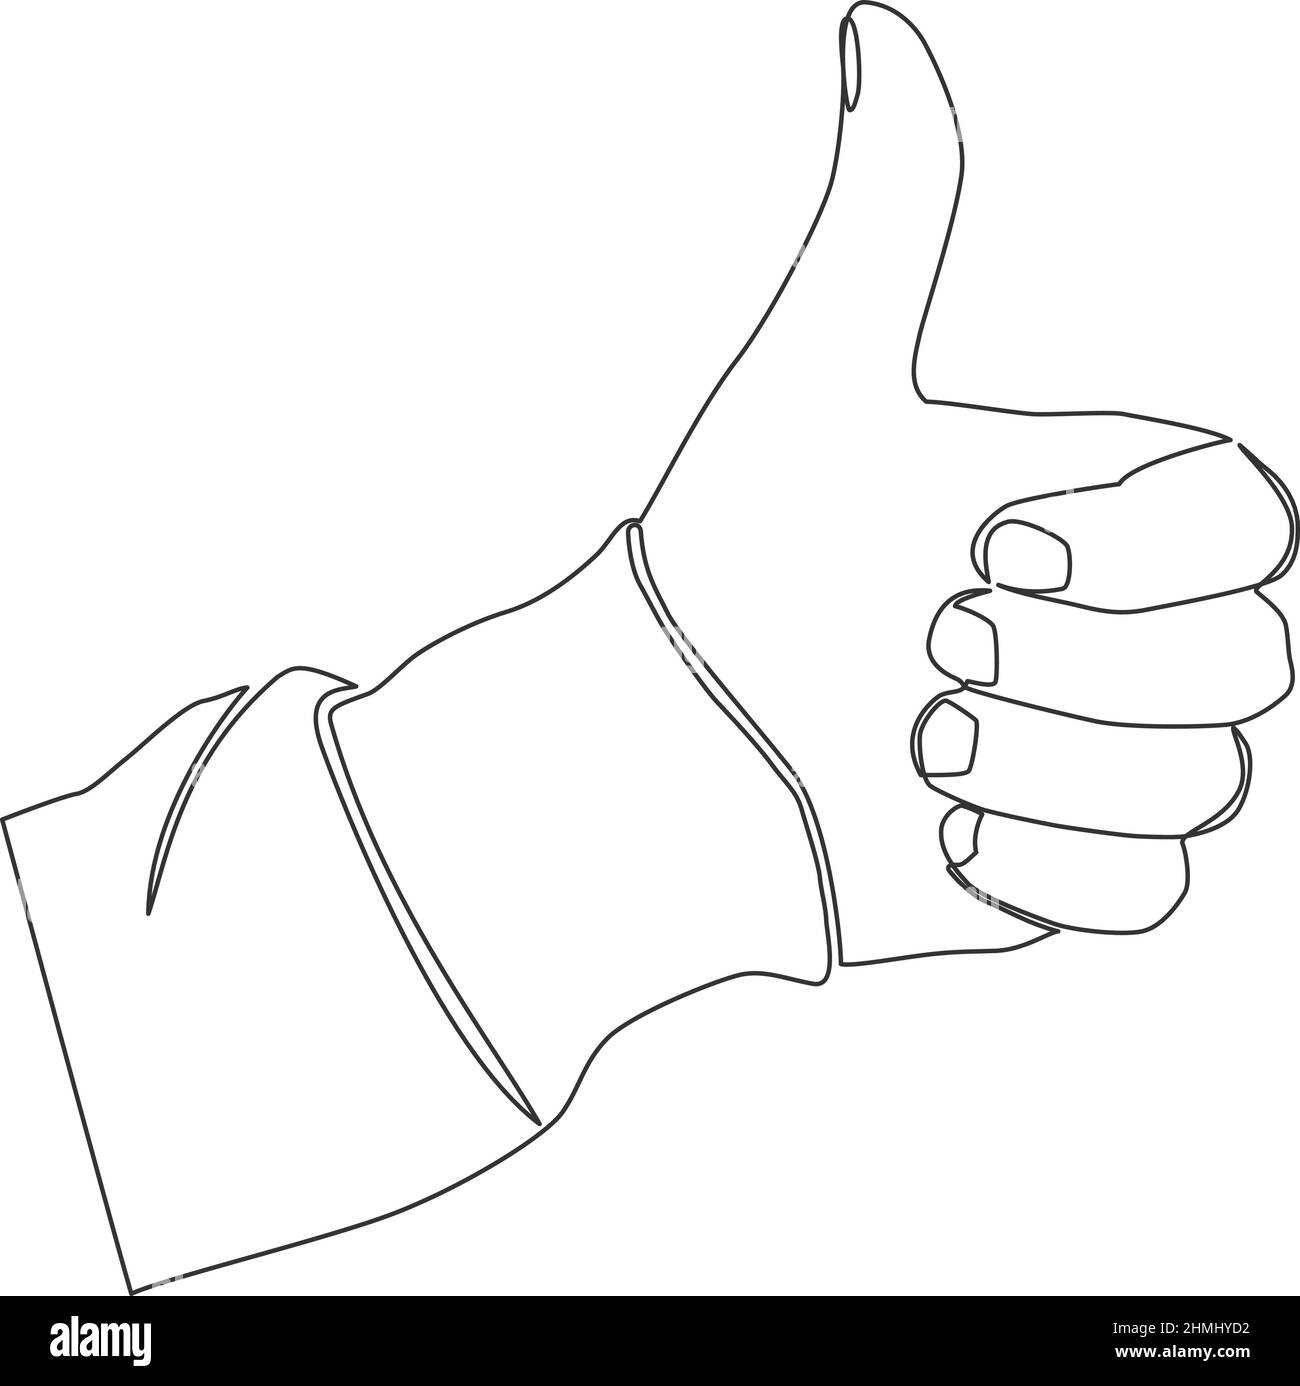 disegno a linea sinusoidale della mano facendo i pollici verso l'alto gesto, illustrazione a linea continua vettoriale Illustrazione Vettoriale